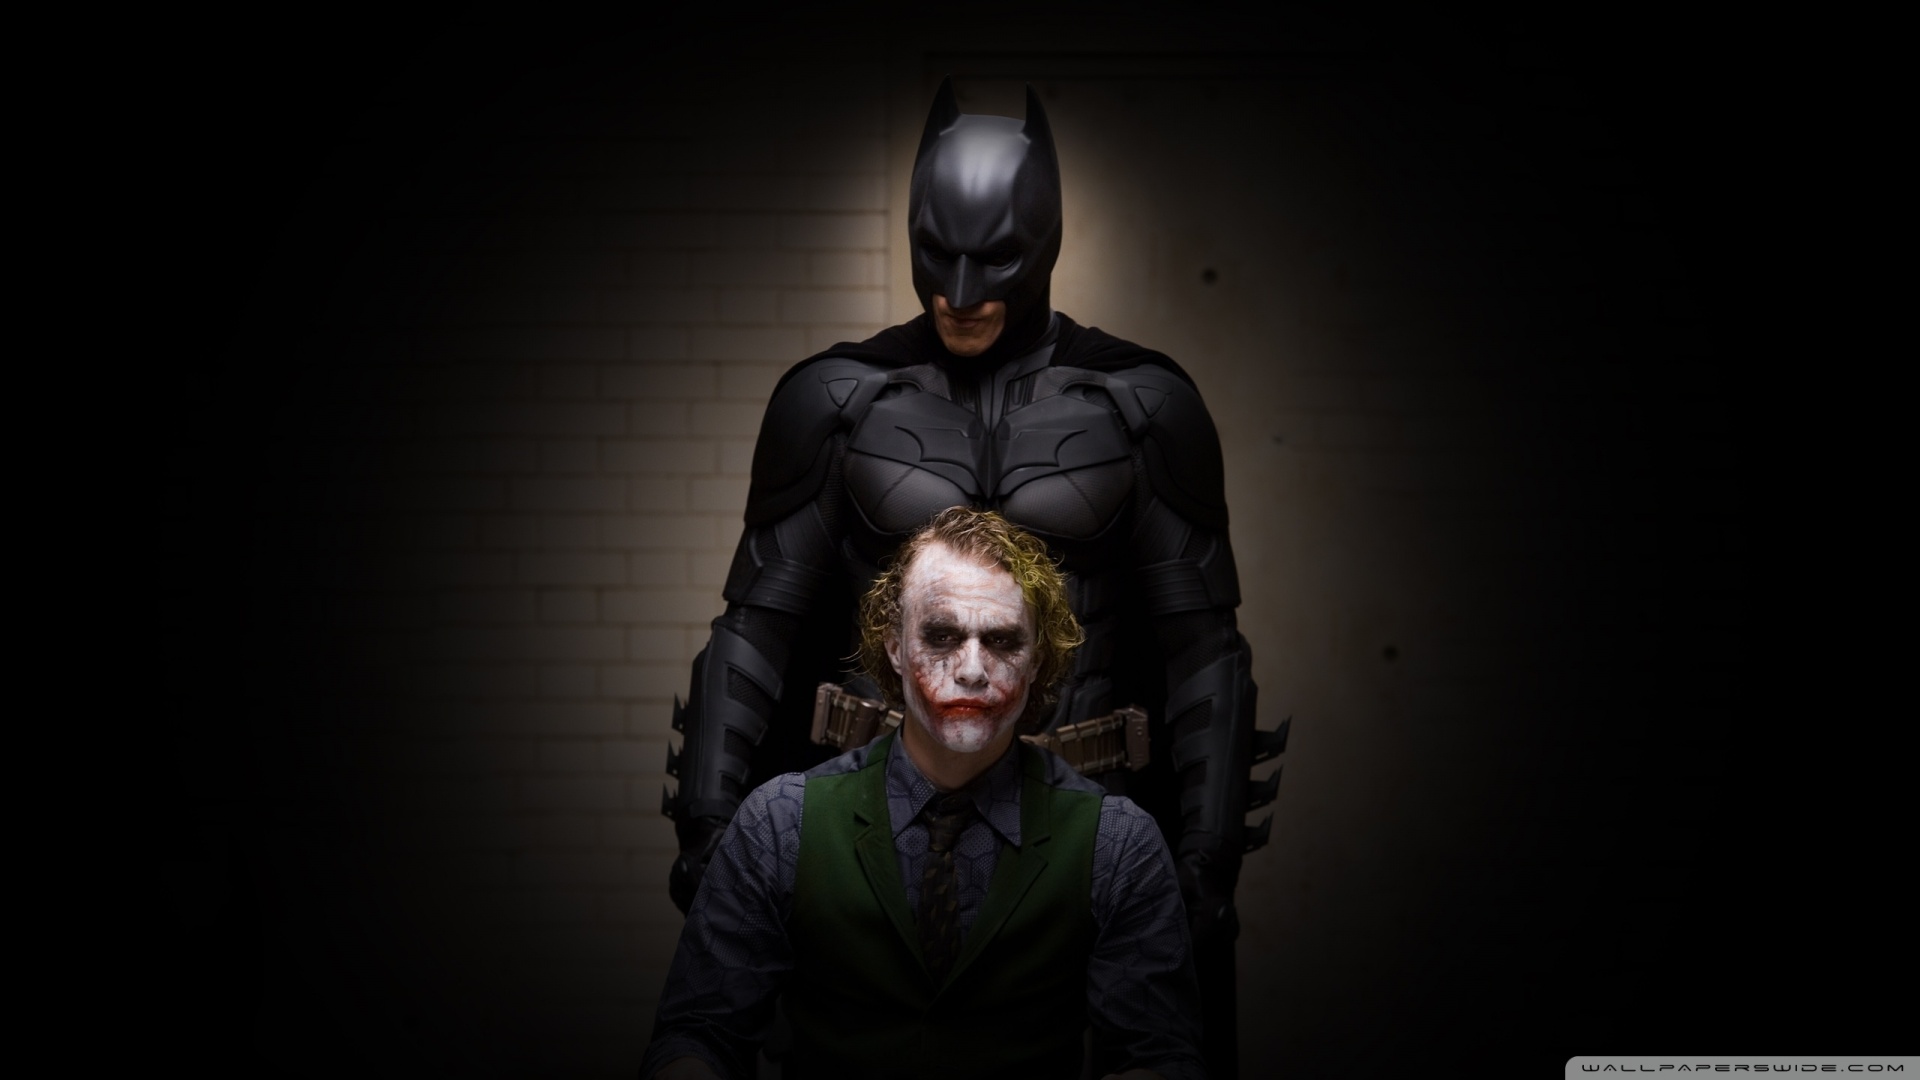 Batman And Joker Wallpaper 1920x1080 Batman And Joker 1920x1080